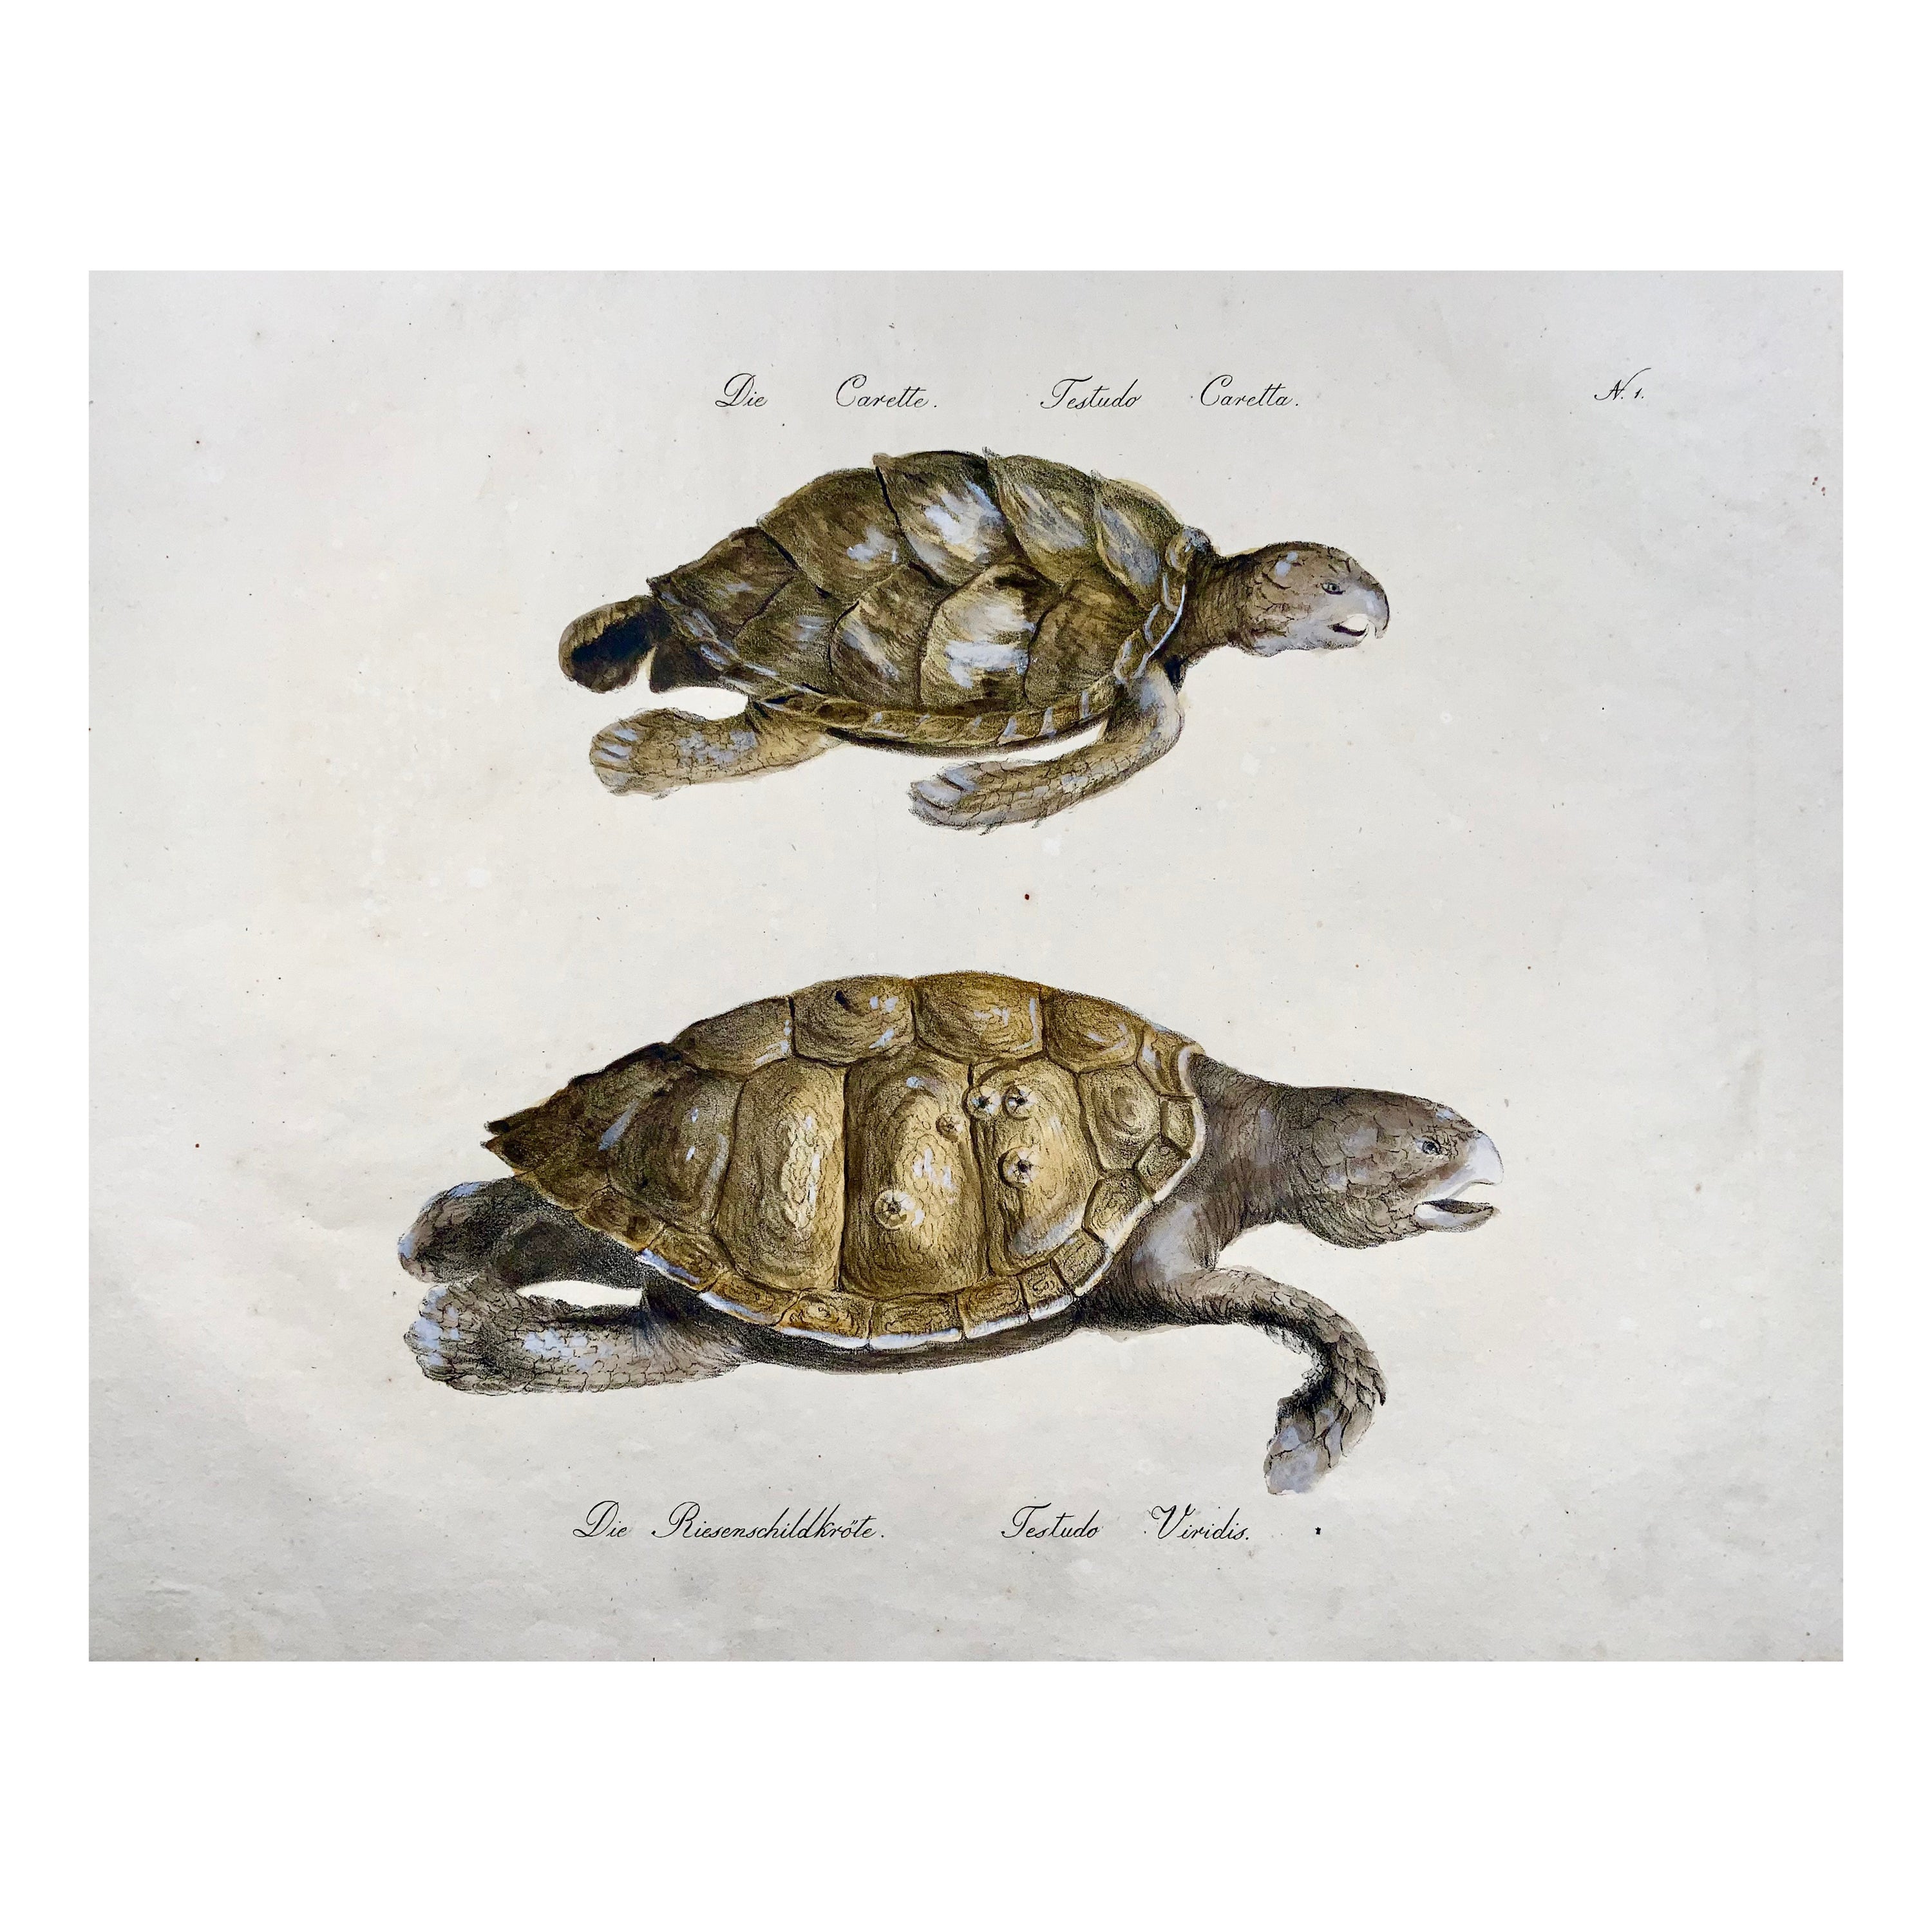 Turtles, Brodtmann, Imp. folio 42,5 cm, incunabulaire de la lithographie, 1816